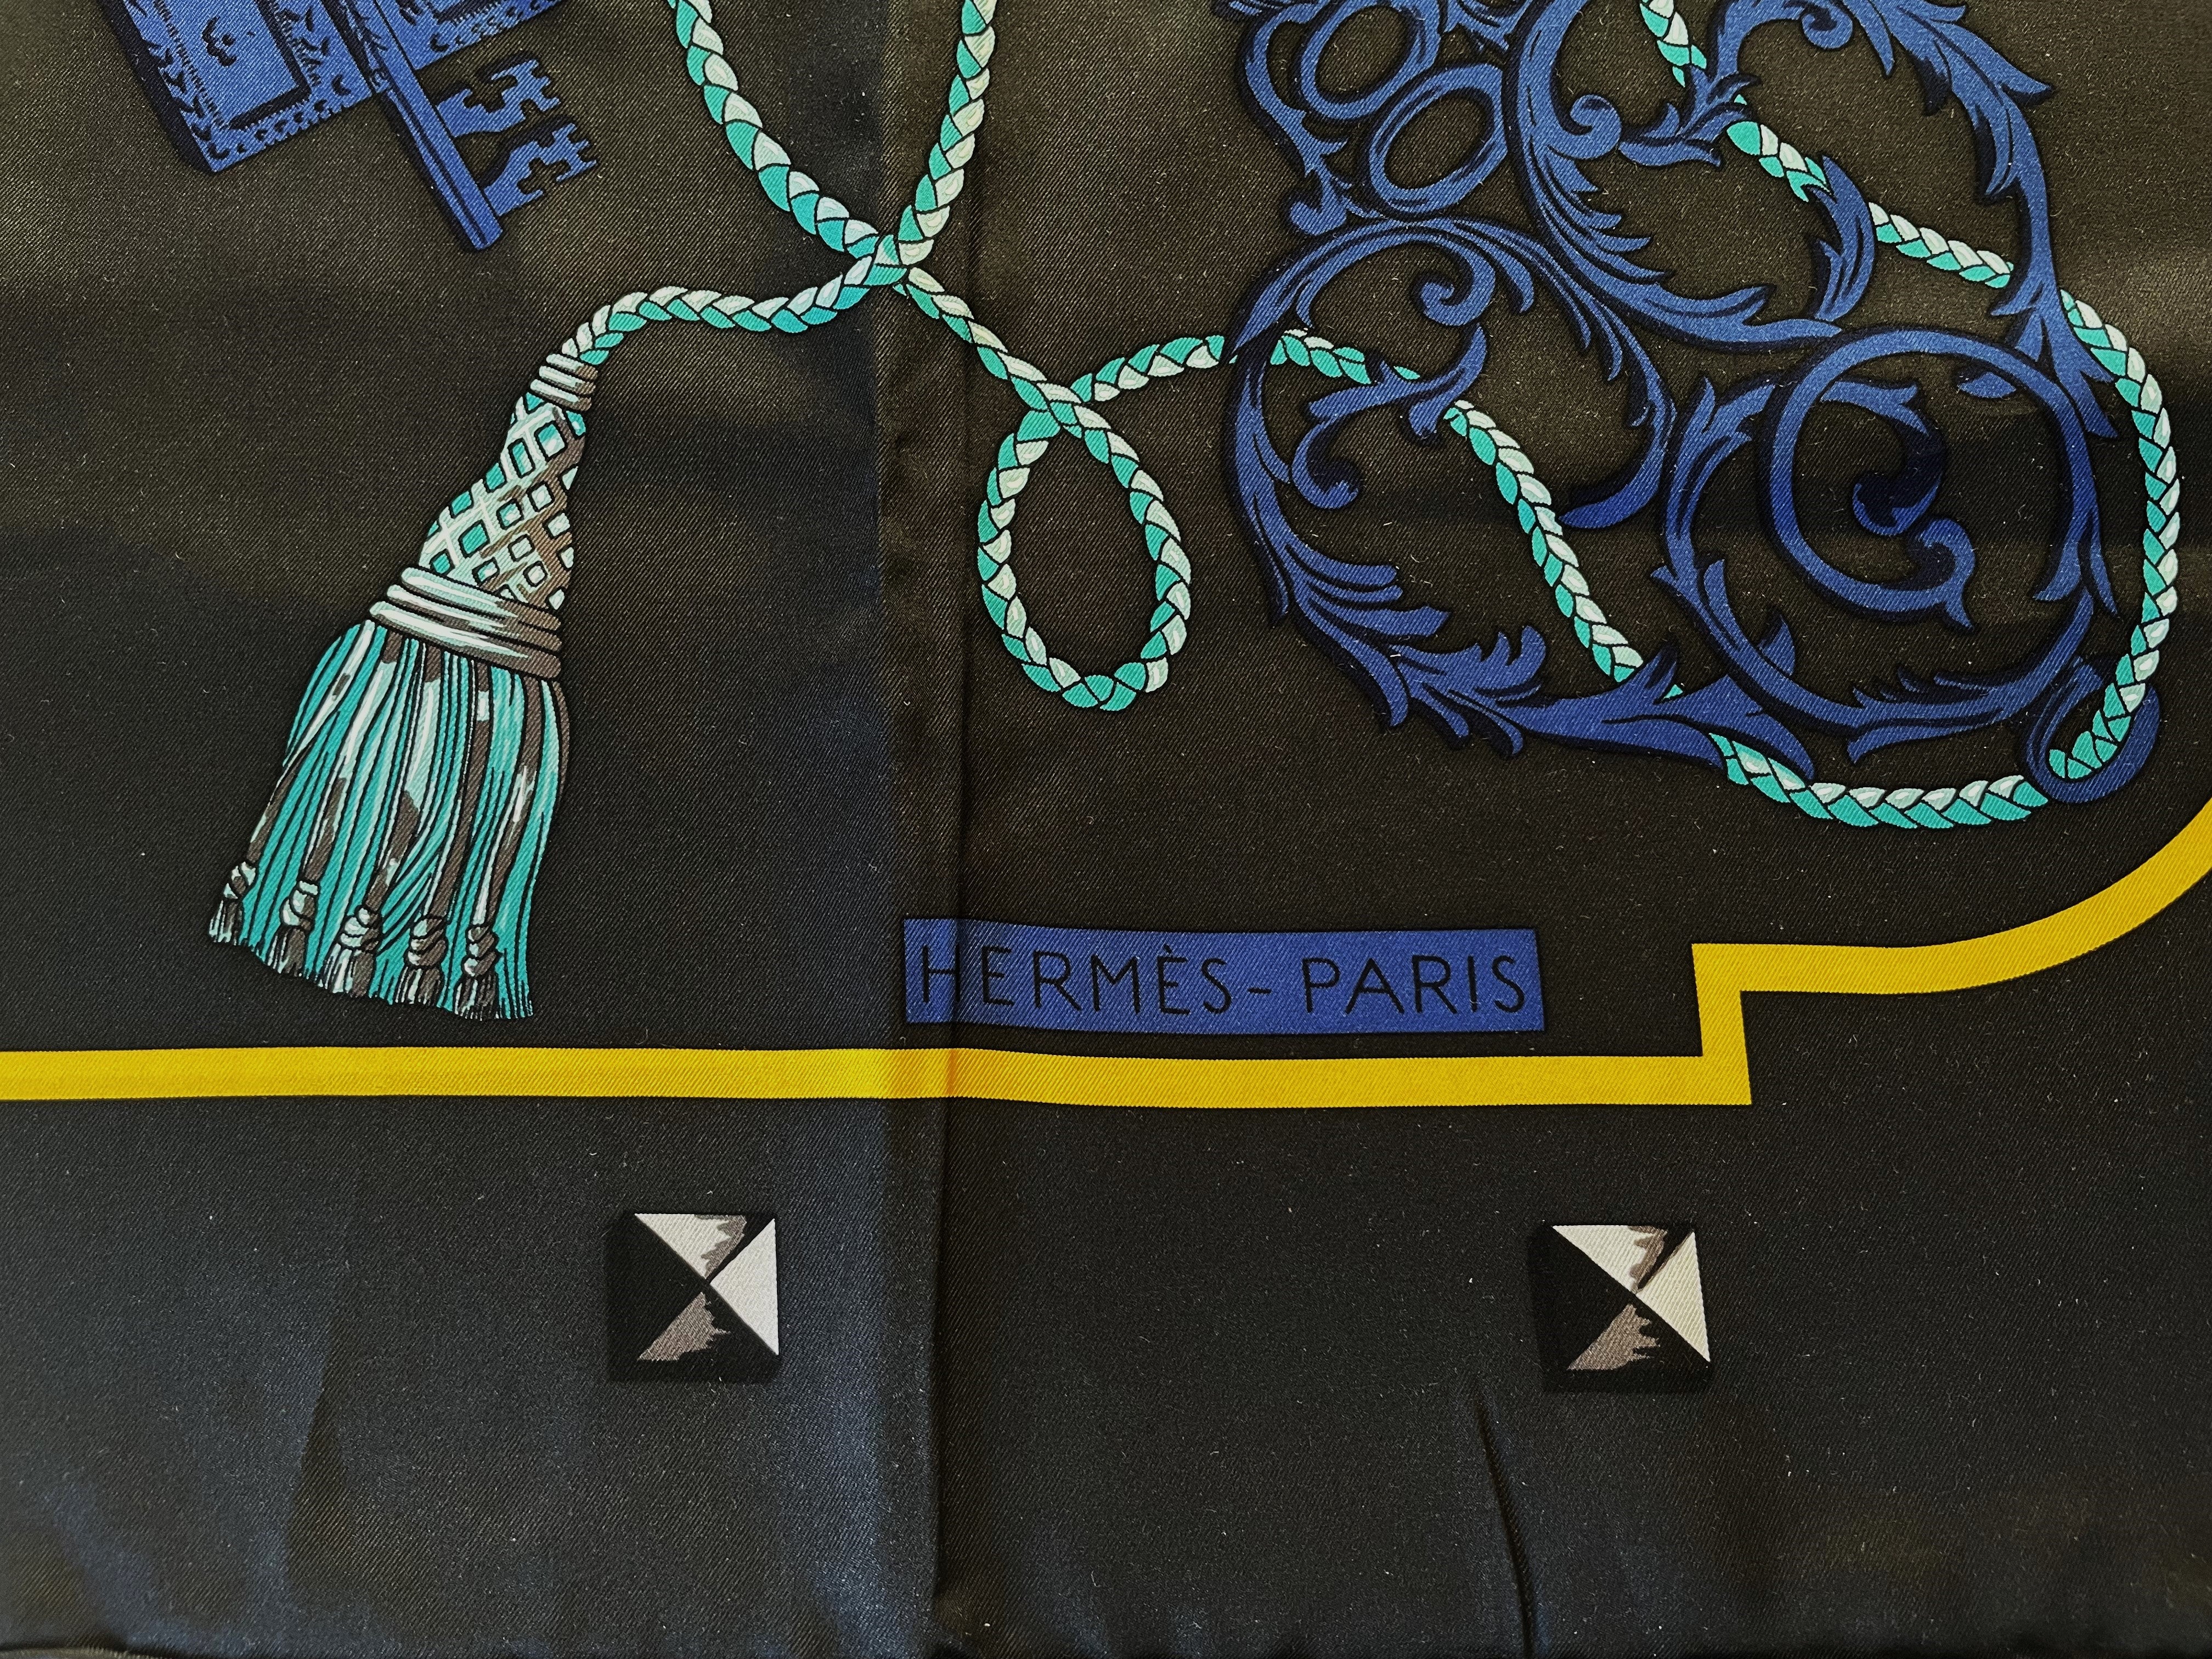 Hermes großer Schal aus 100 % Seide, 140 x 140 cm groß,  mit blauen und grauen Schlüsselmotiven, handgerollt von HERMÈS mit einem Schlüsselmotiv auf anthrazitfarbenem Hintergrund. Eine türkisfarbene Kordel mit Quaste zieht sich durch das gesamte